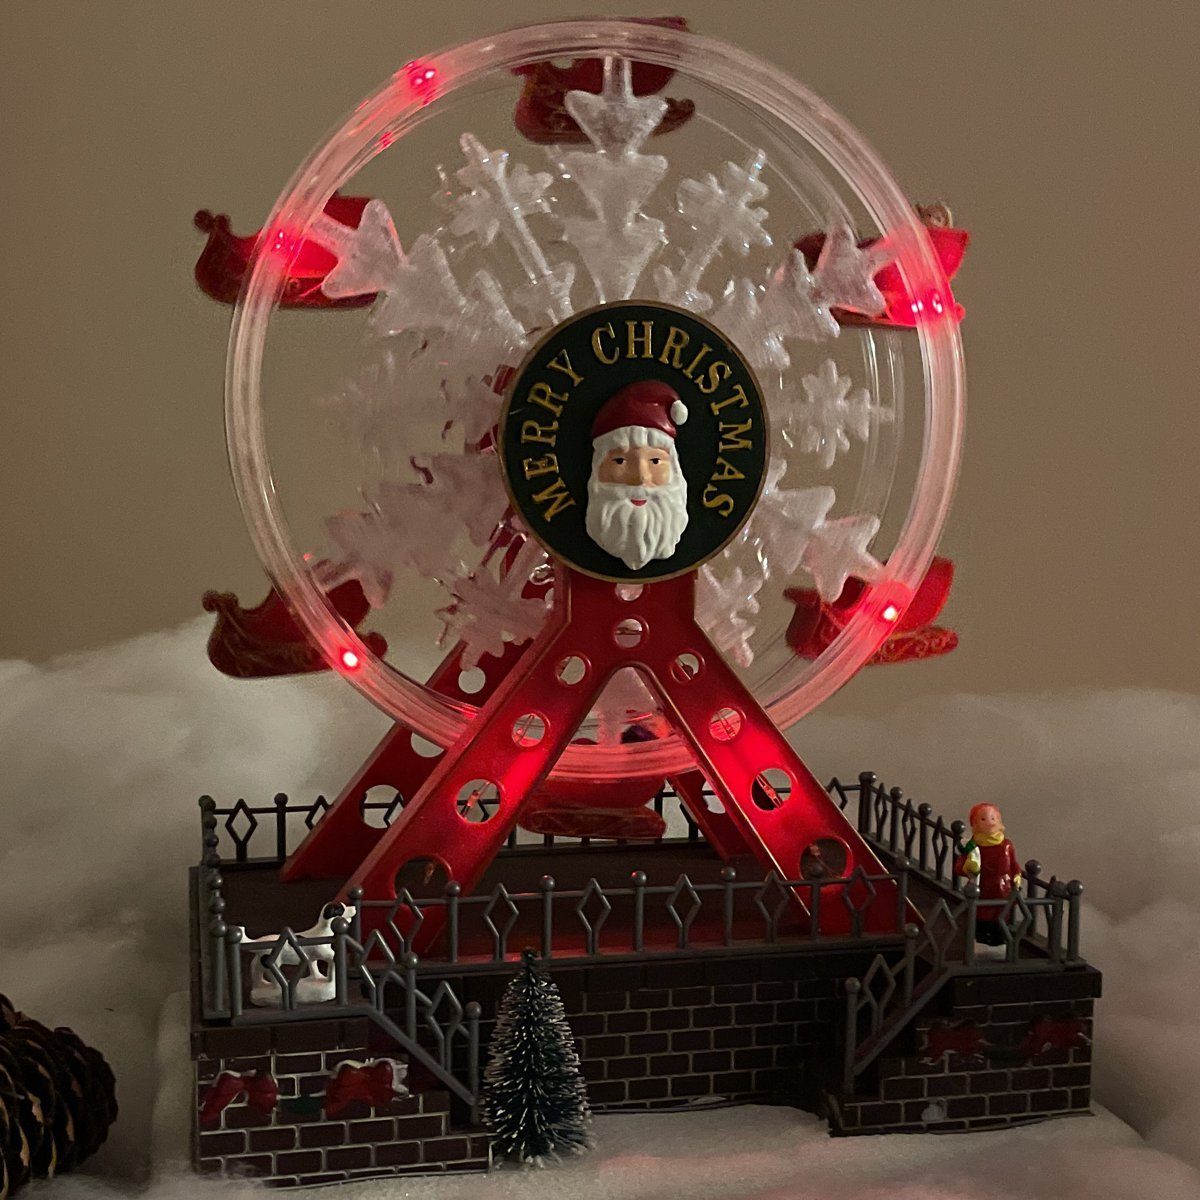 e4fun Weihnachtsdorf Riesenrad und mit Dreh-Riesenrad LED Beleuchtung,Musik Weihnachtsdorf